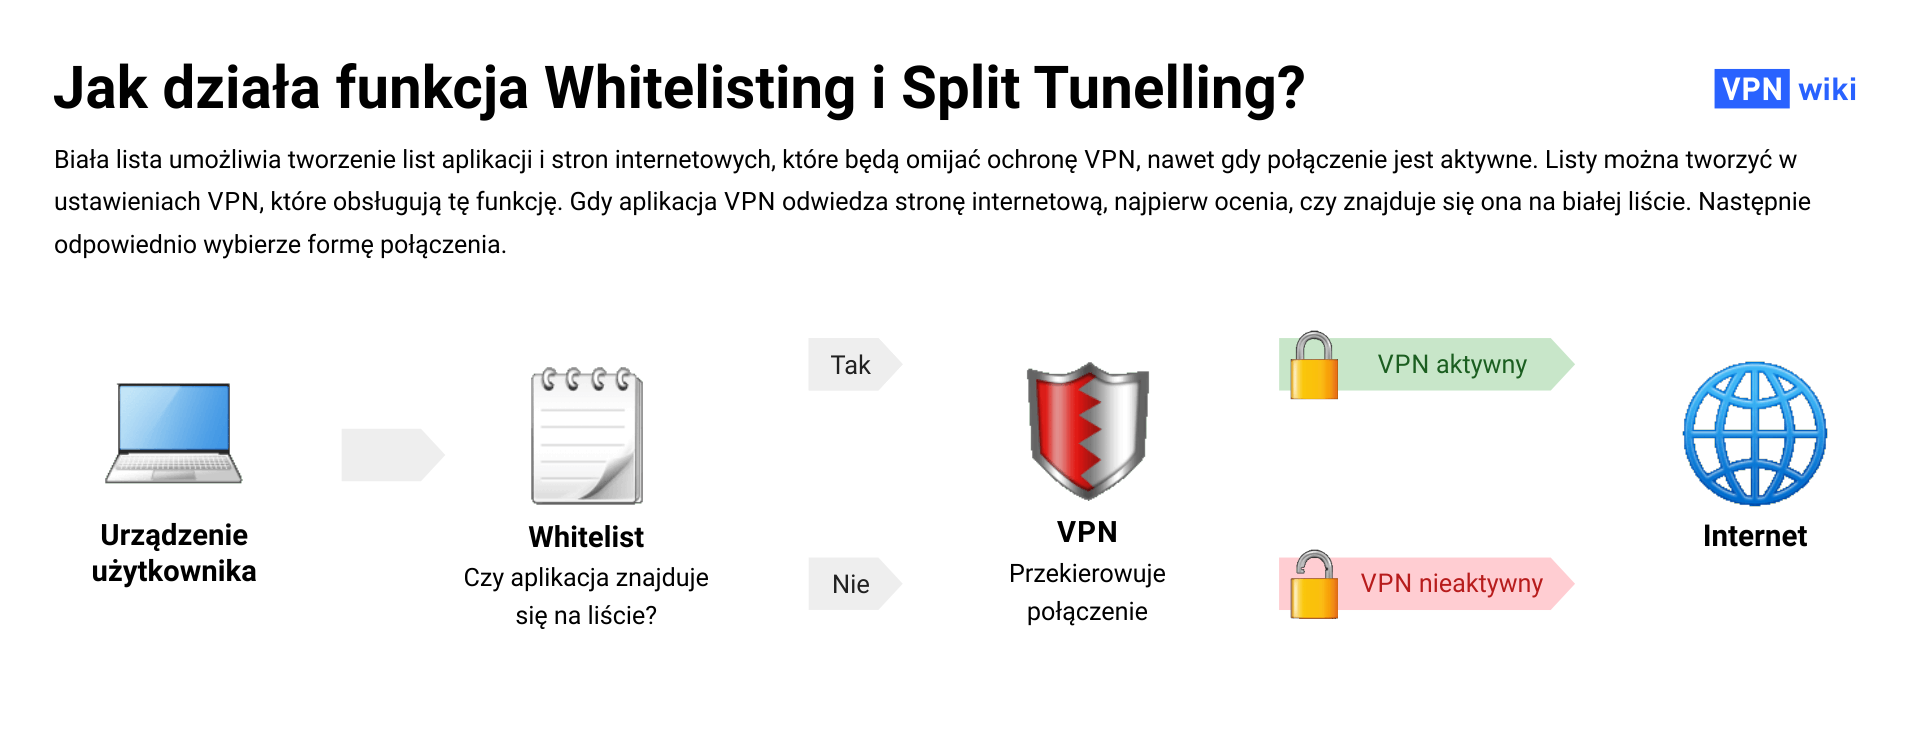 Co to jest Whitelisting w sieci VPN i do czego służy?